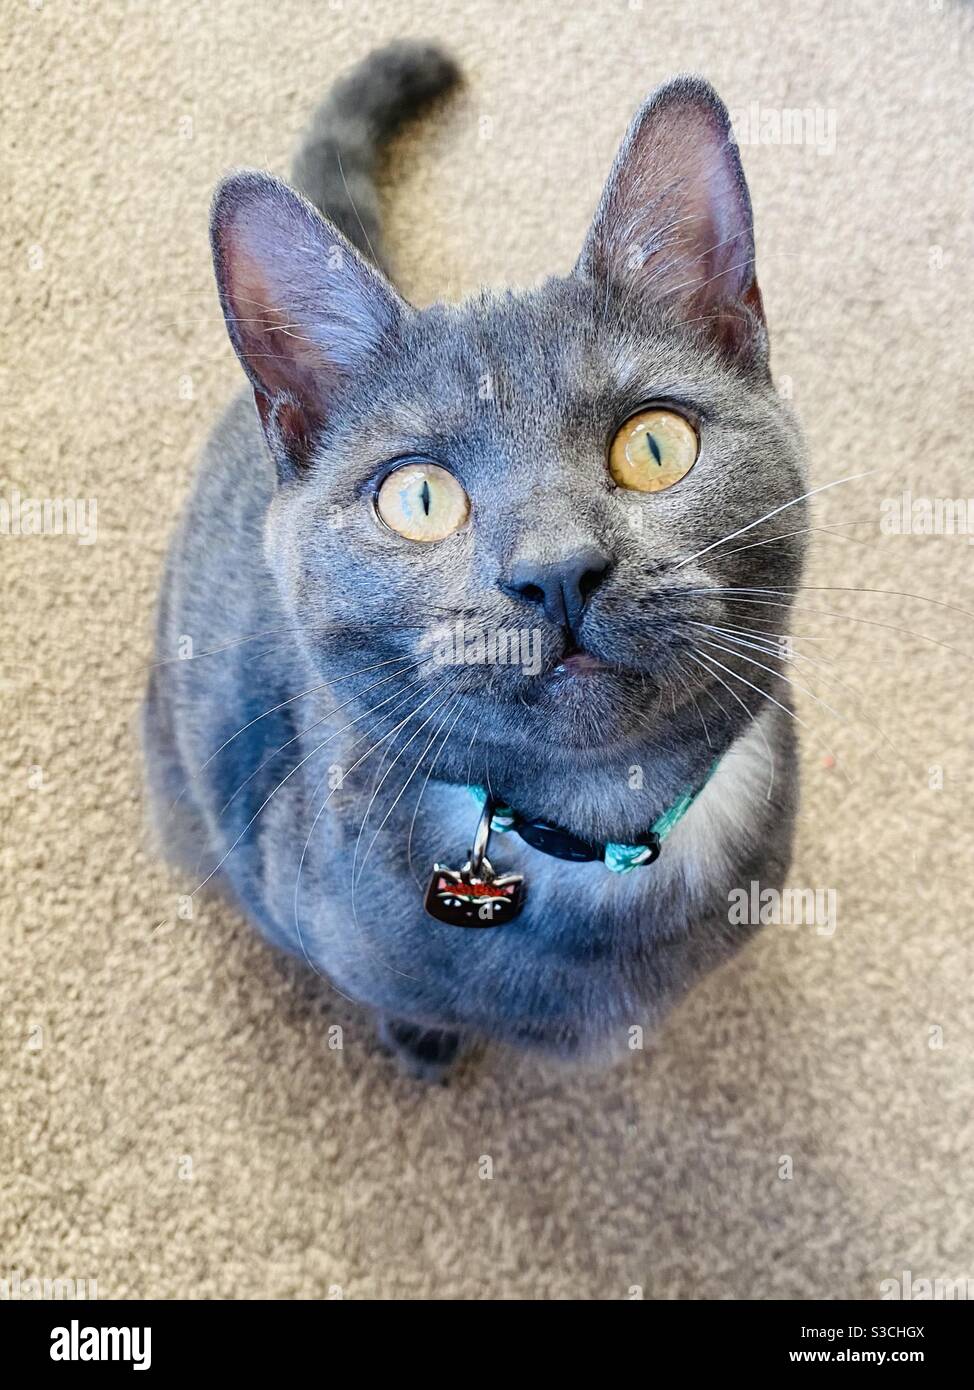 Kitten with new collar Stock Photo